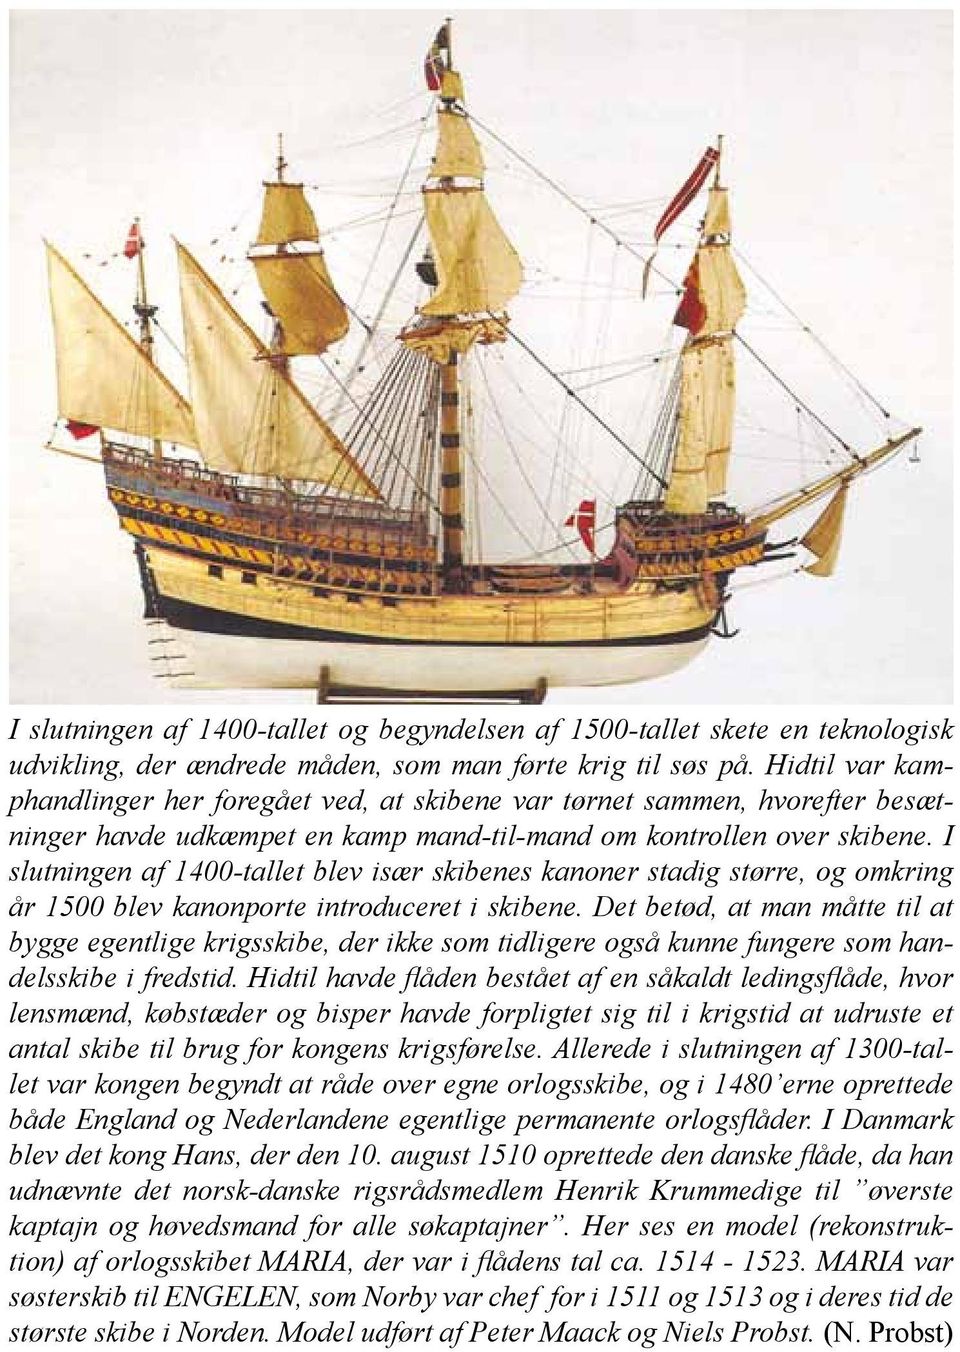 I slutningen af 1400-tallet blev især skibenes kanoner stadig større, og omkring år 1500 blev kanonporte introduceret i skibene.